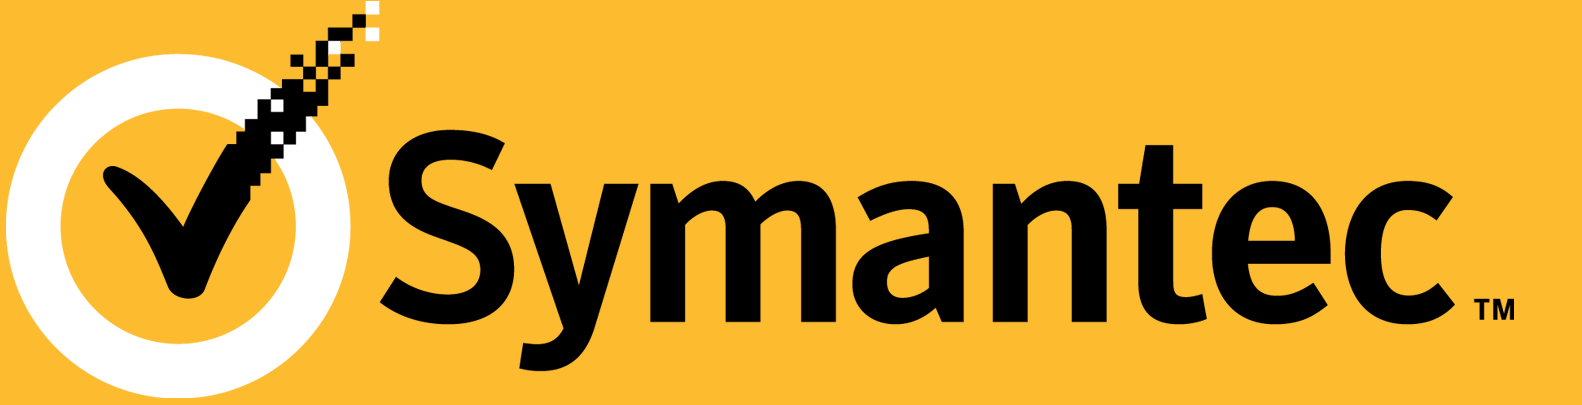 Symantec Enterprise Tektik Destek İlkesi Kapsam Bu Kurumsal Teknik Destek İlkesi ( İlke ) 2 Temmuz 2011 tarihinden itibaren geçerlidir sve dünya çapında uygulanacaktır.